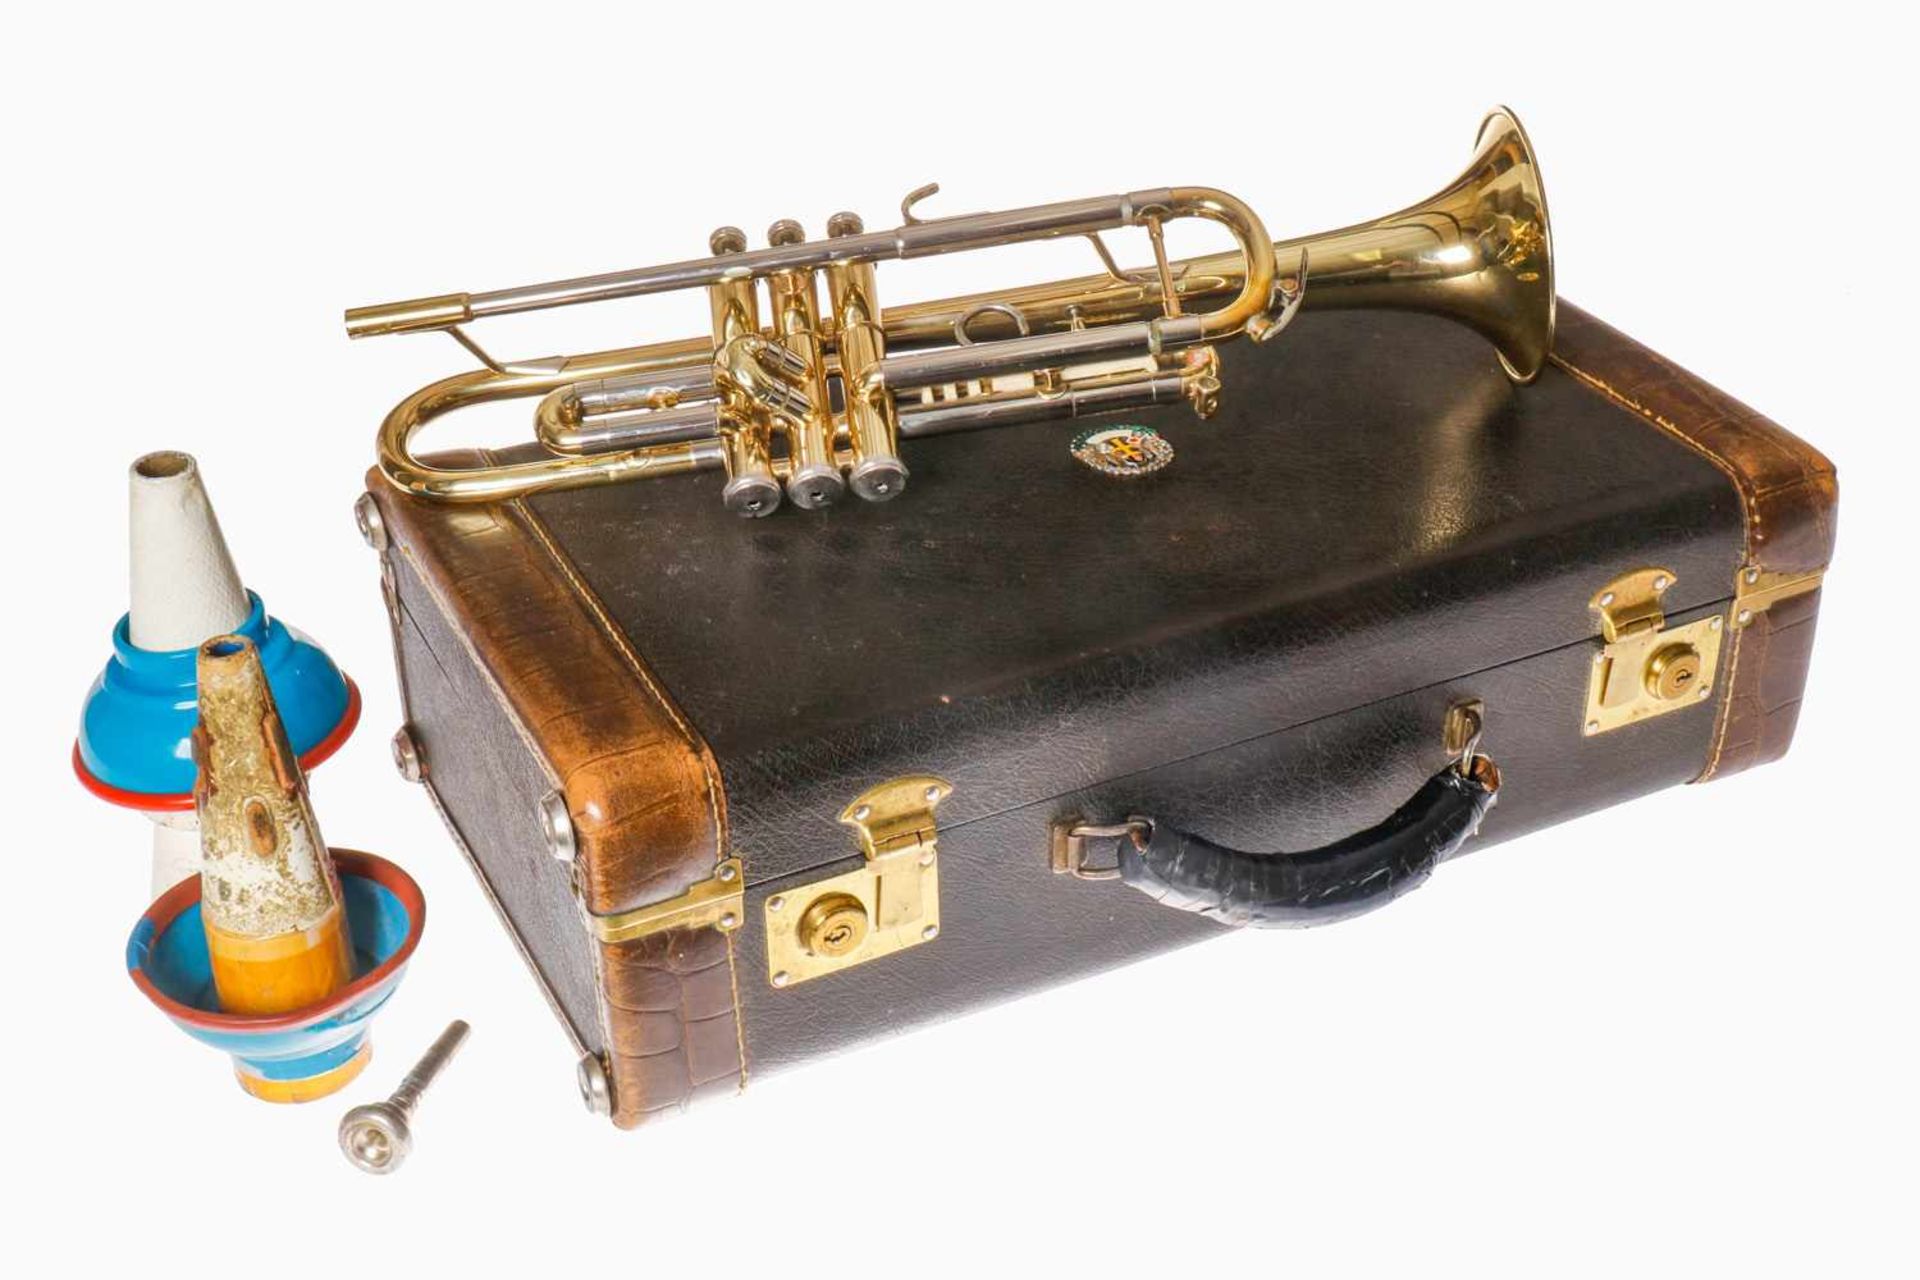 Getzen Trompete "Capri", Nr. A 44066, mit Perlmutt-Ventil-Drückern, dazu Original-Koffer mit - Bild 2 aus 7